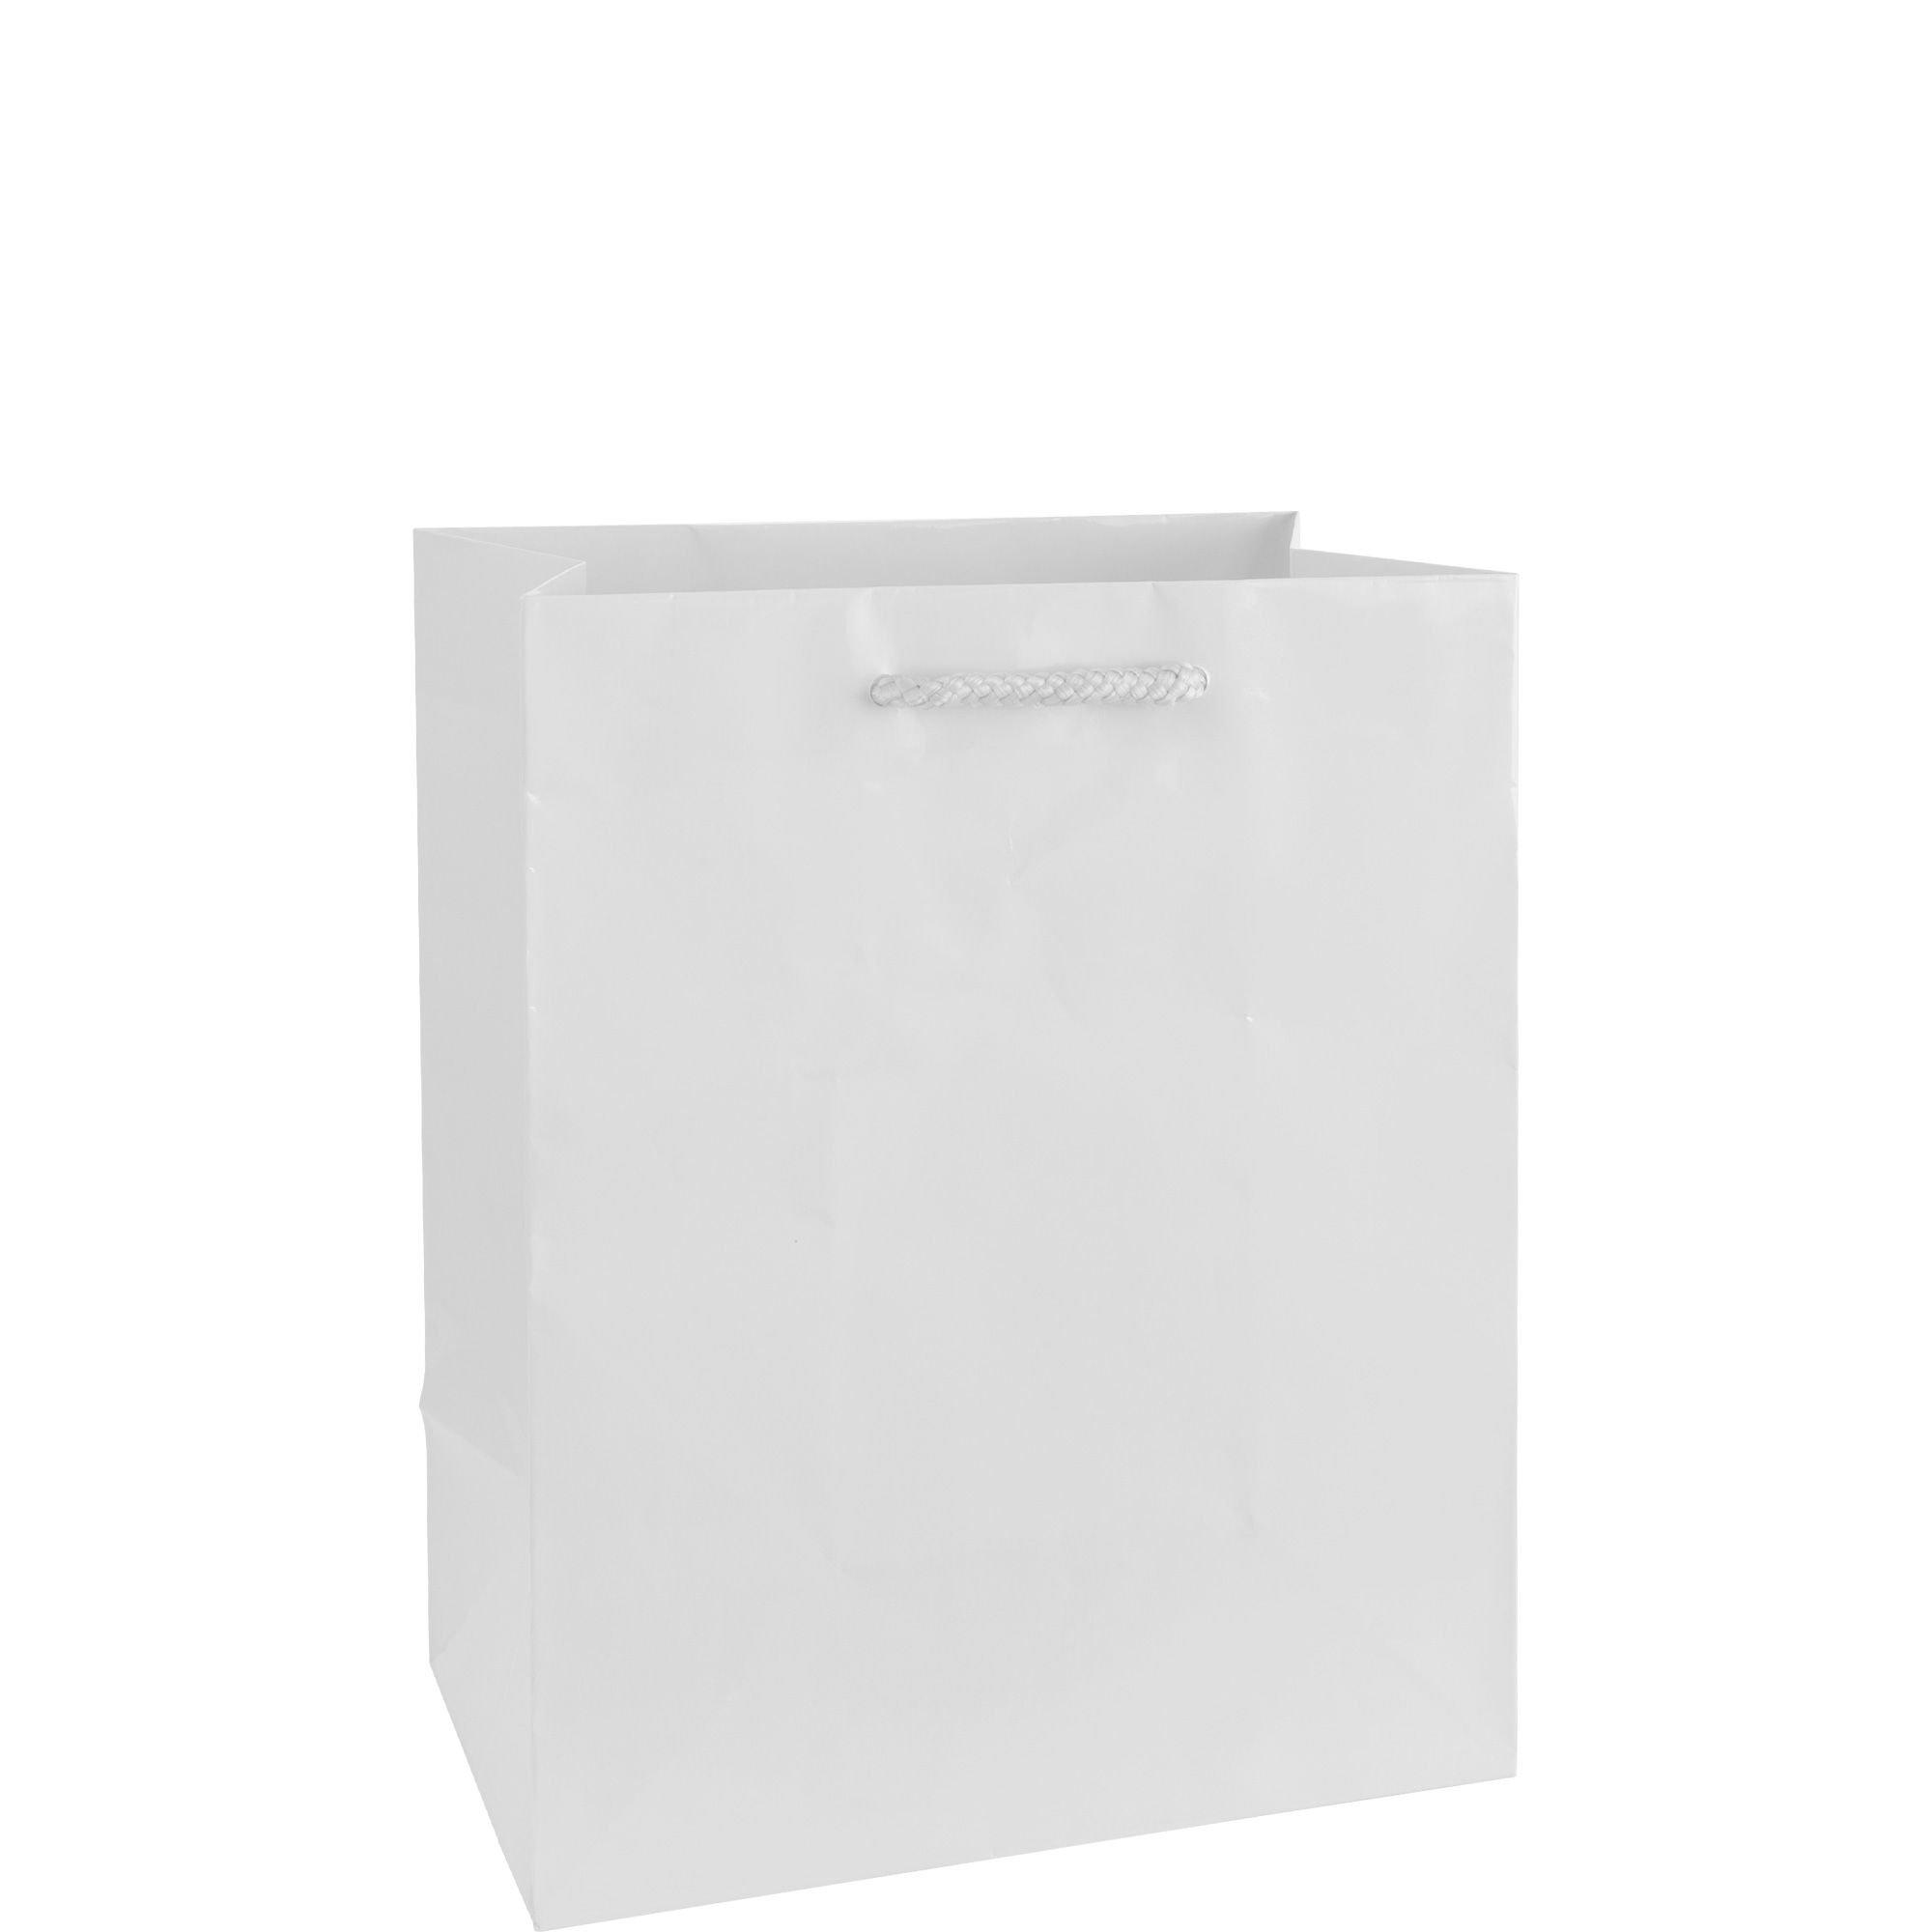 Celebrate It Medium White Paper Bags - 30 ct